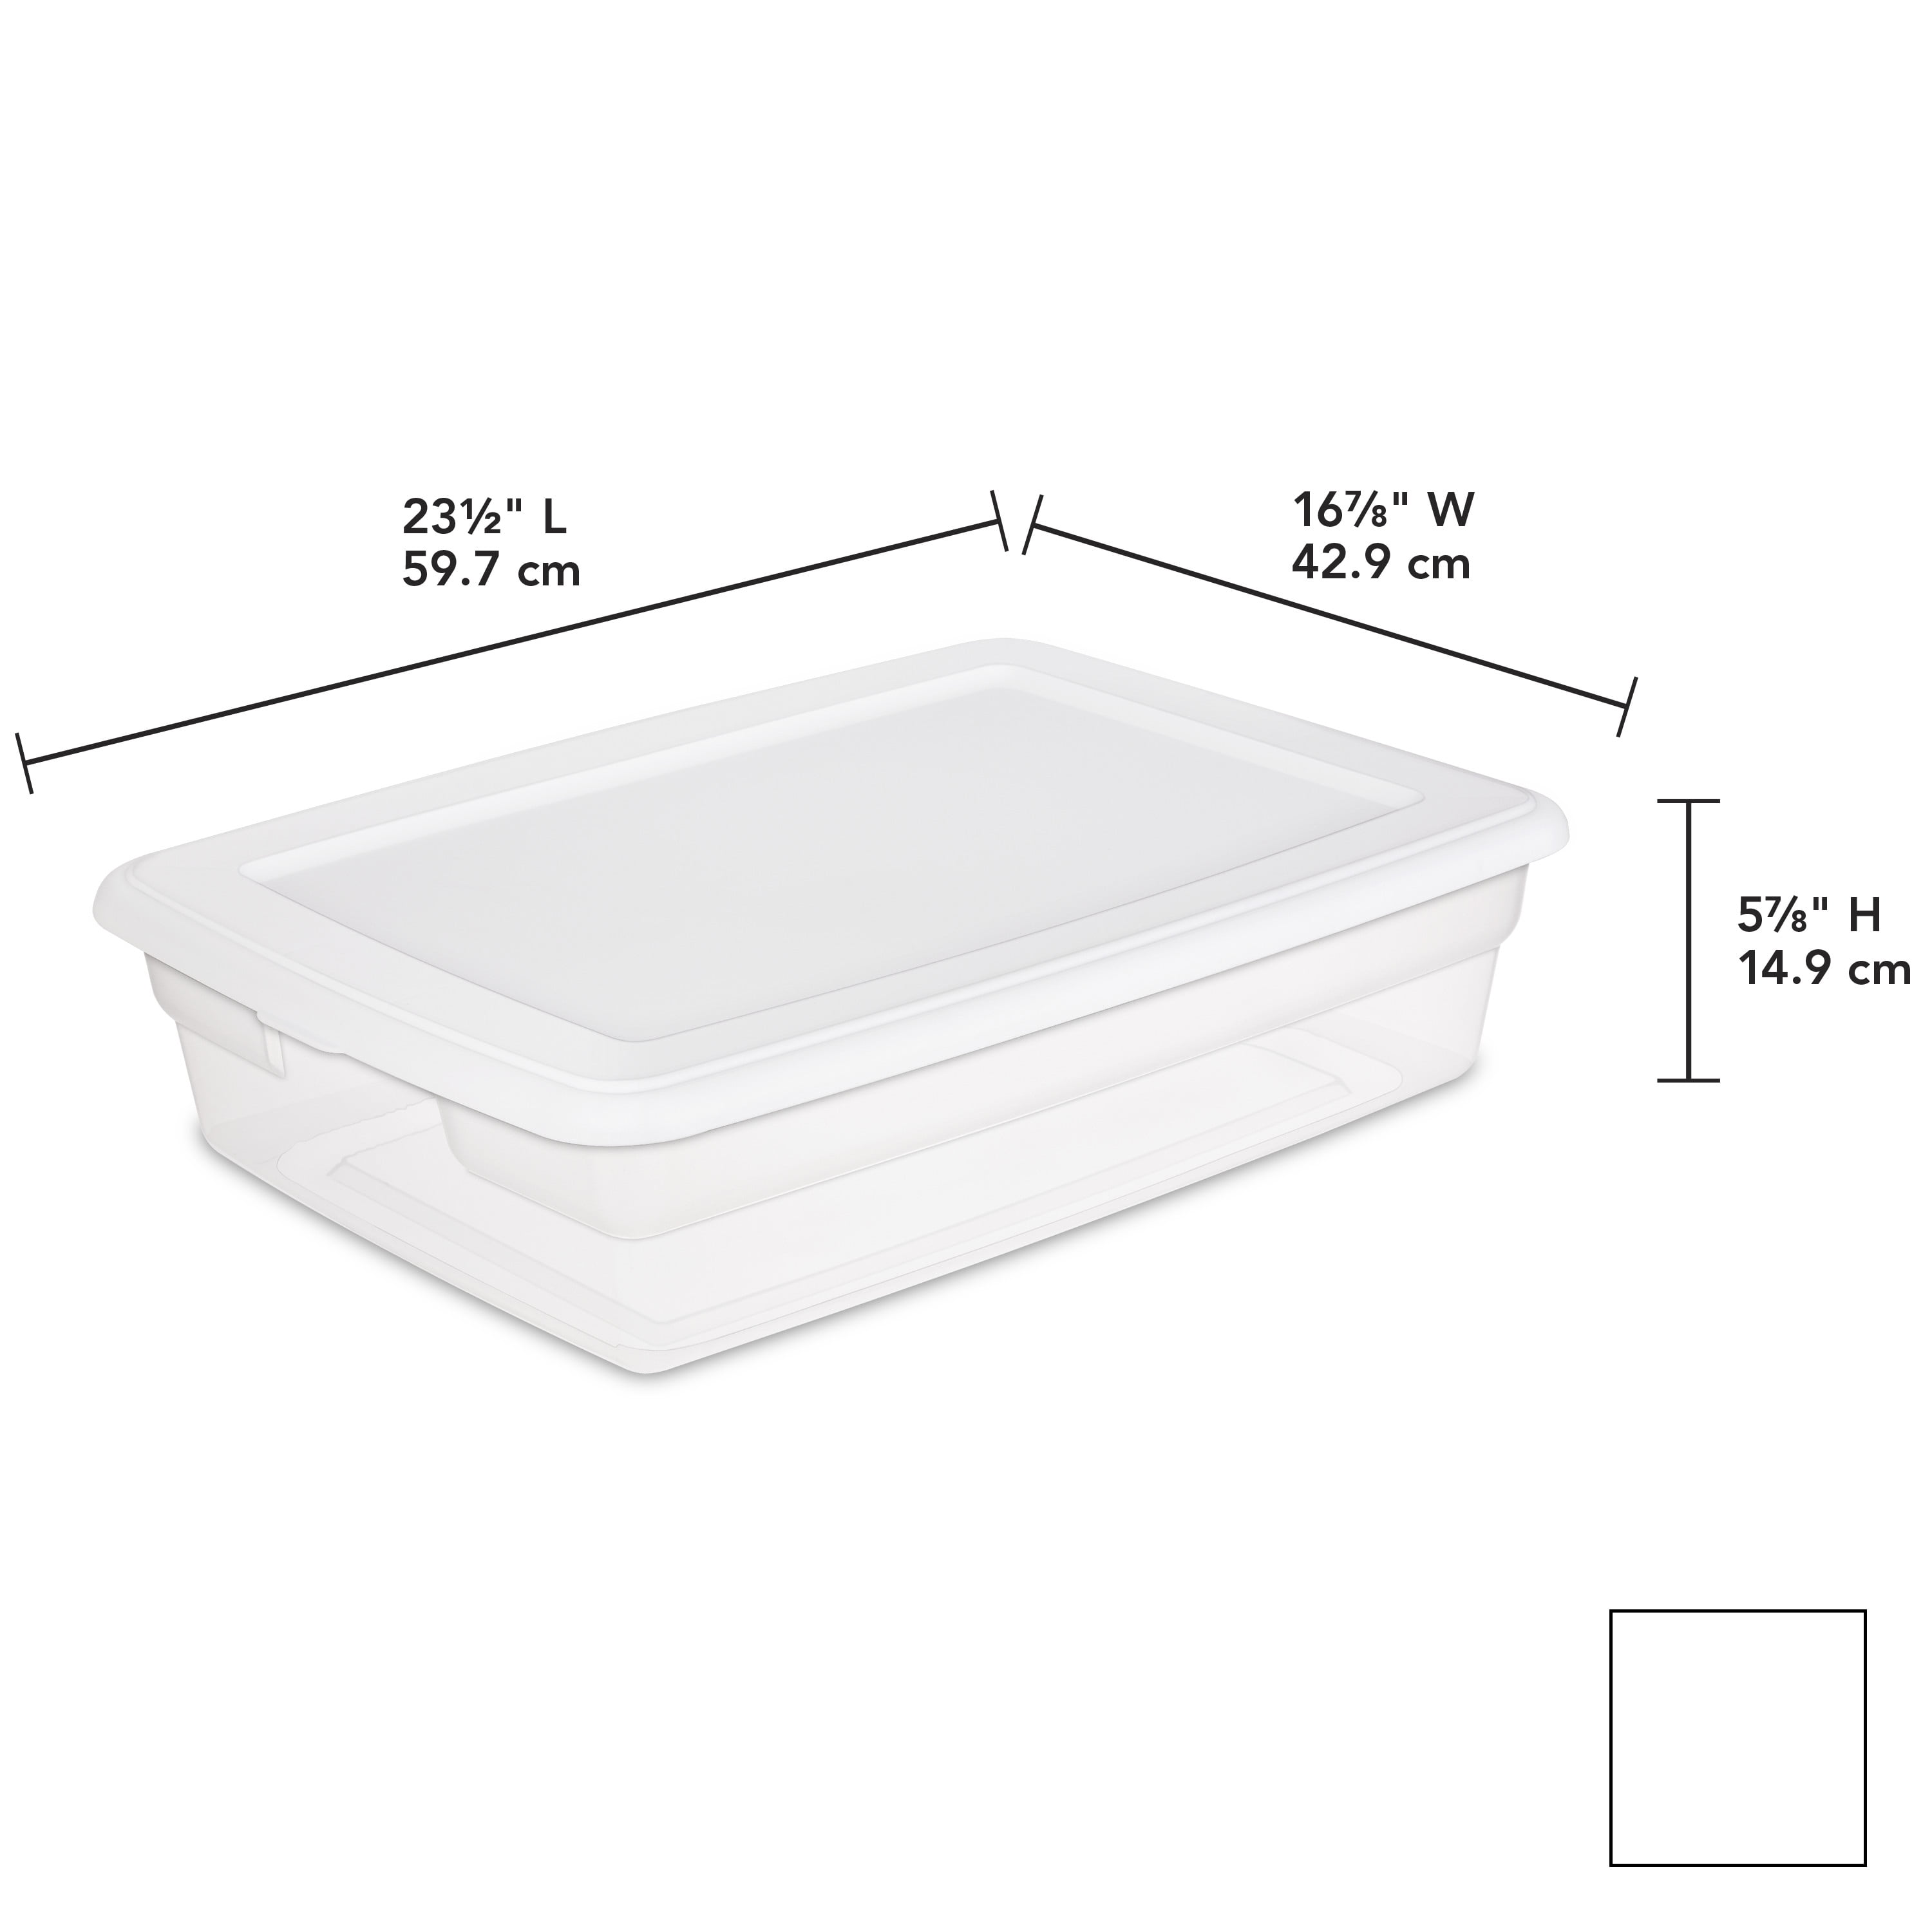 Sterilite 1655 - 28 Qt. Storage Box White 16558010